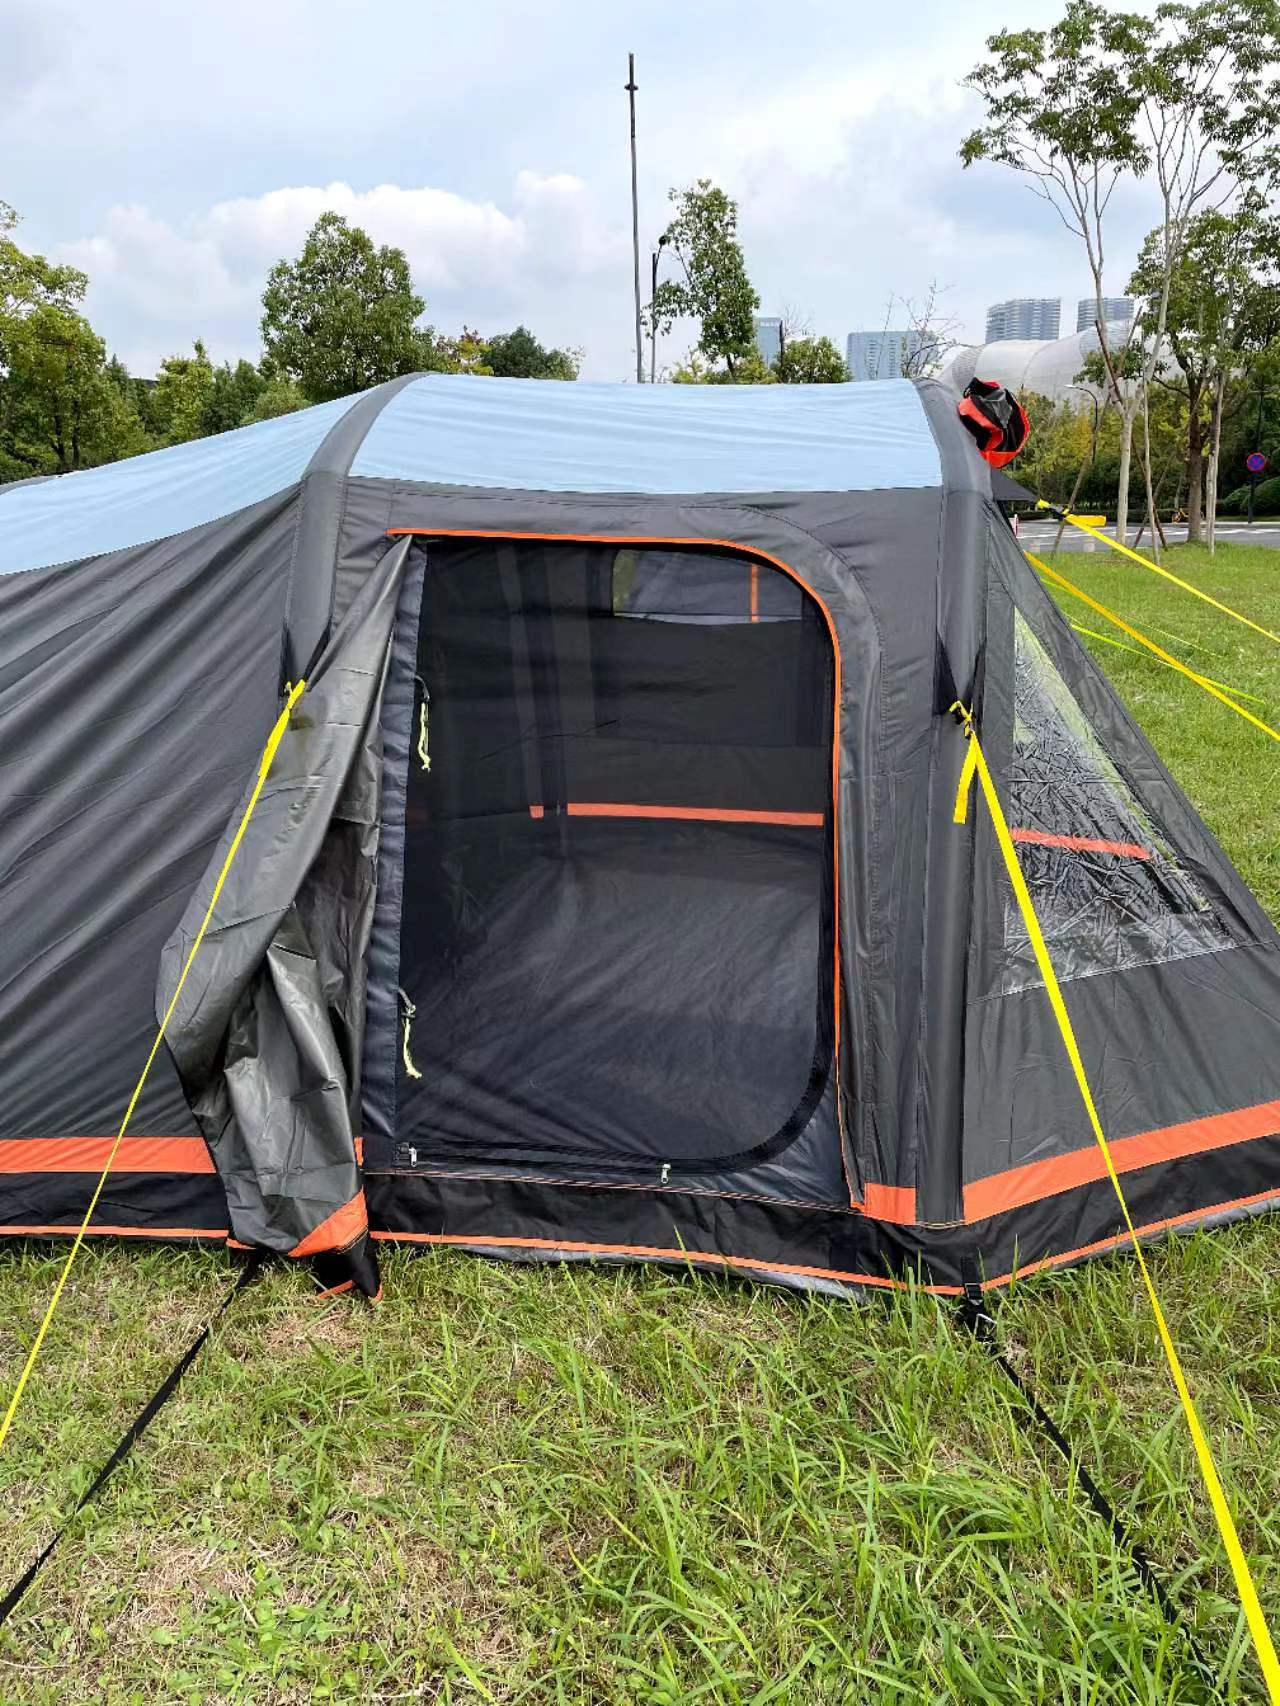 SL-CT1114 Aufblasbares Zelt für 4 Personen